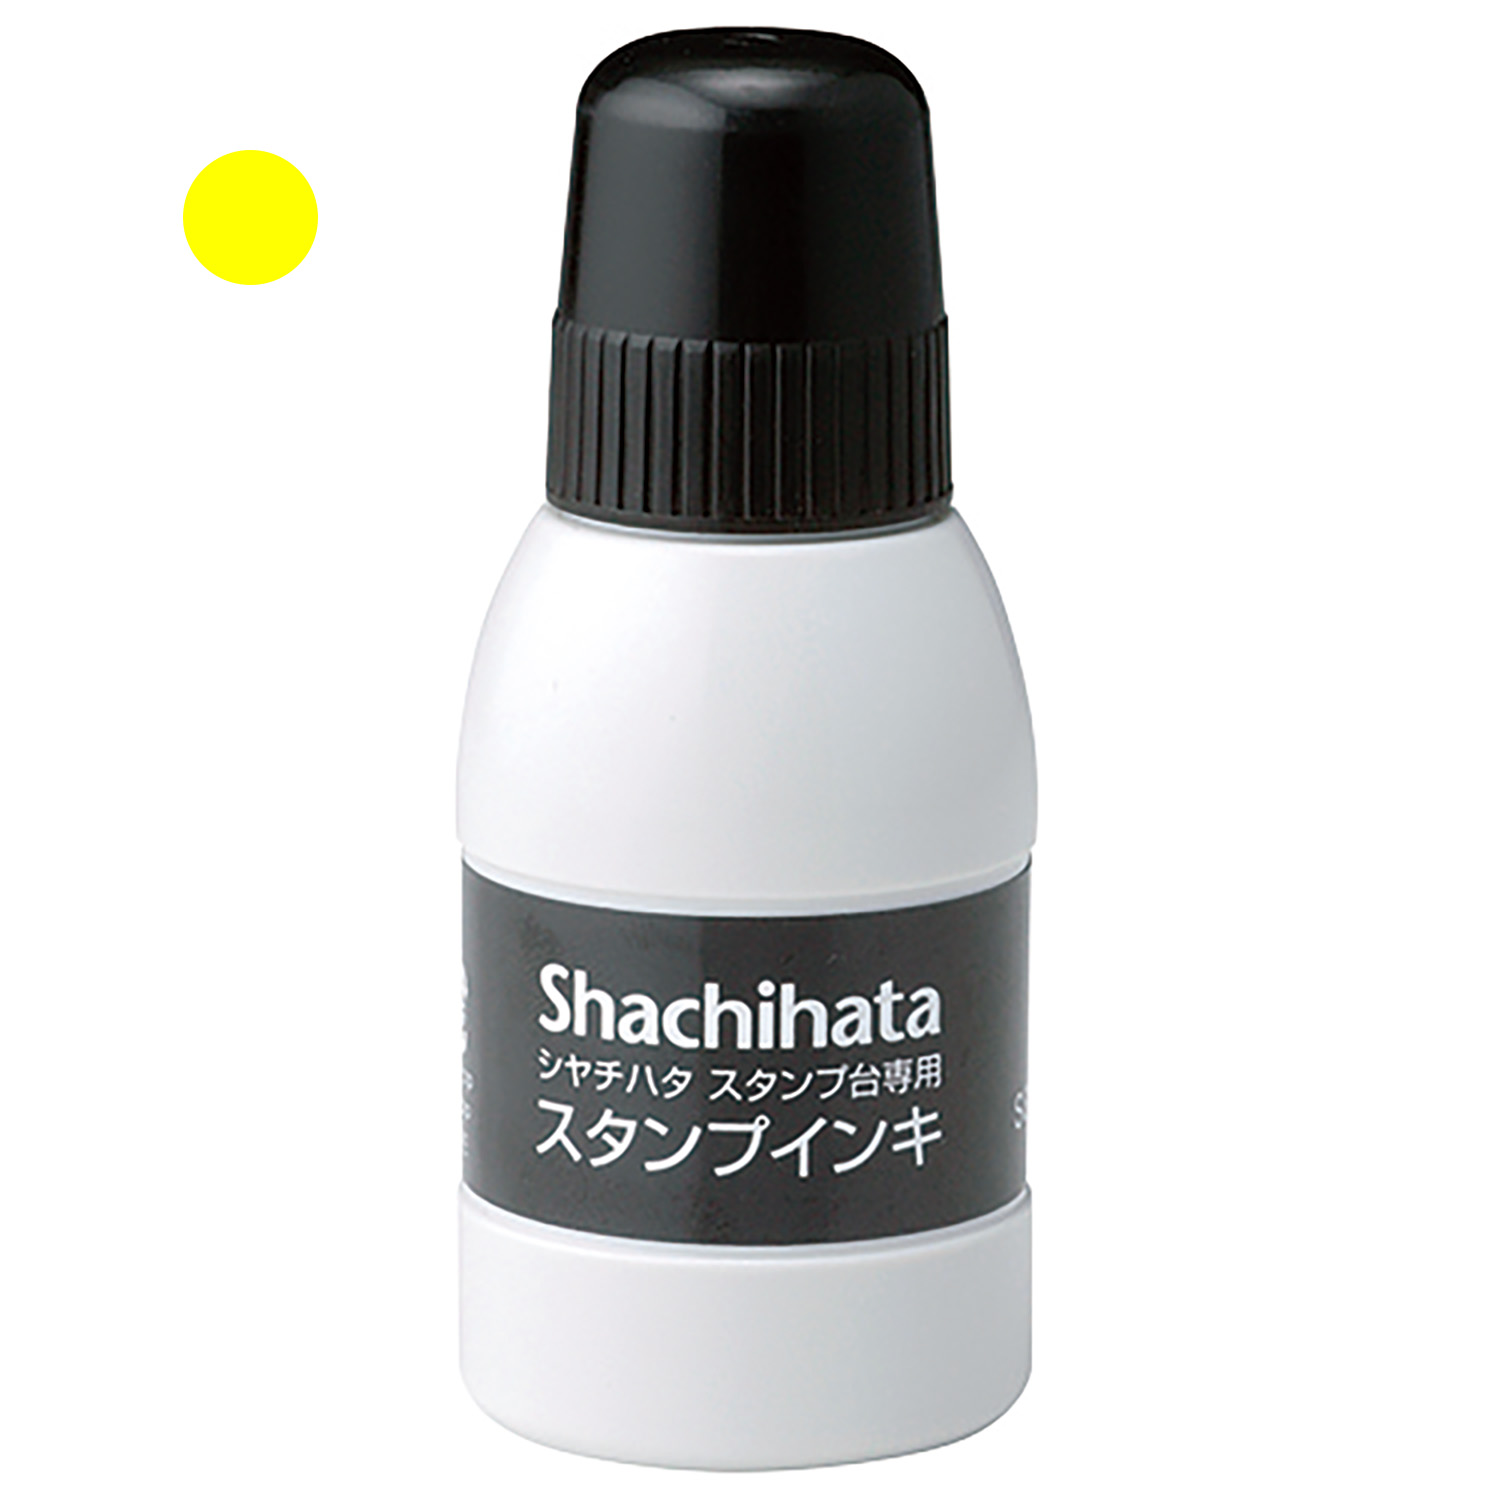 シヤチハタスタンプ台専用スタンプインキ 小瓶 黄色